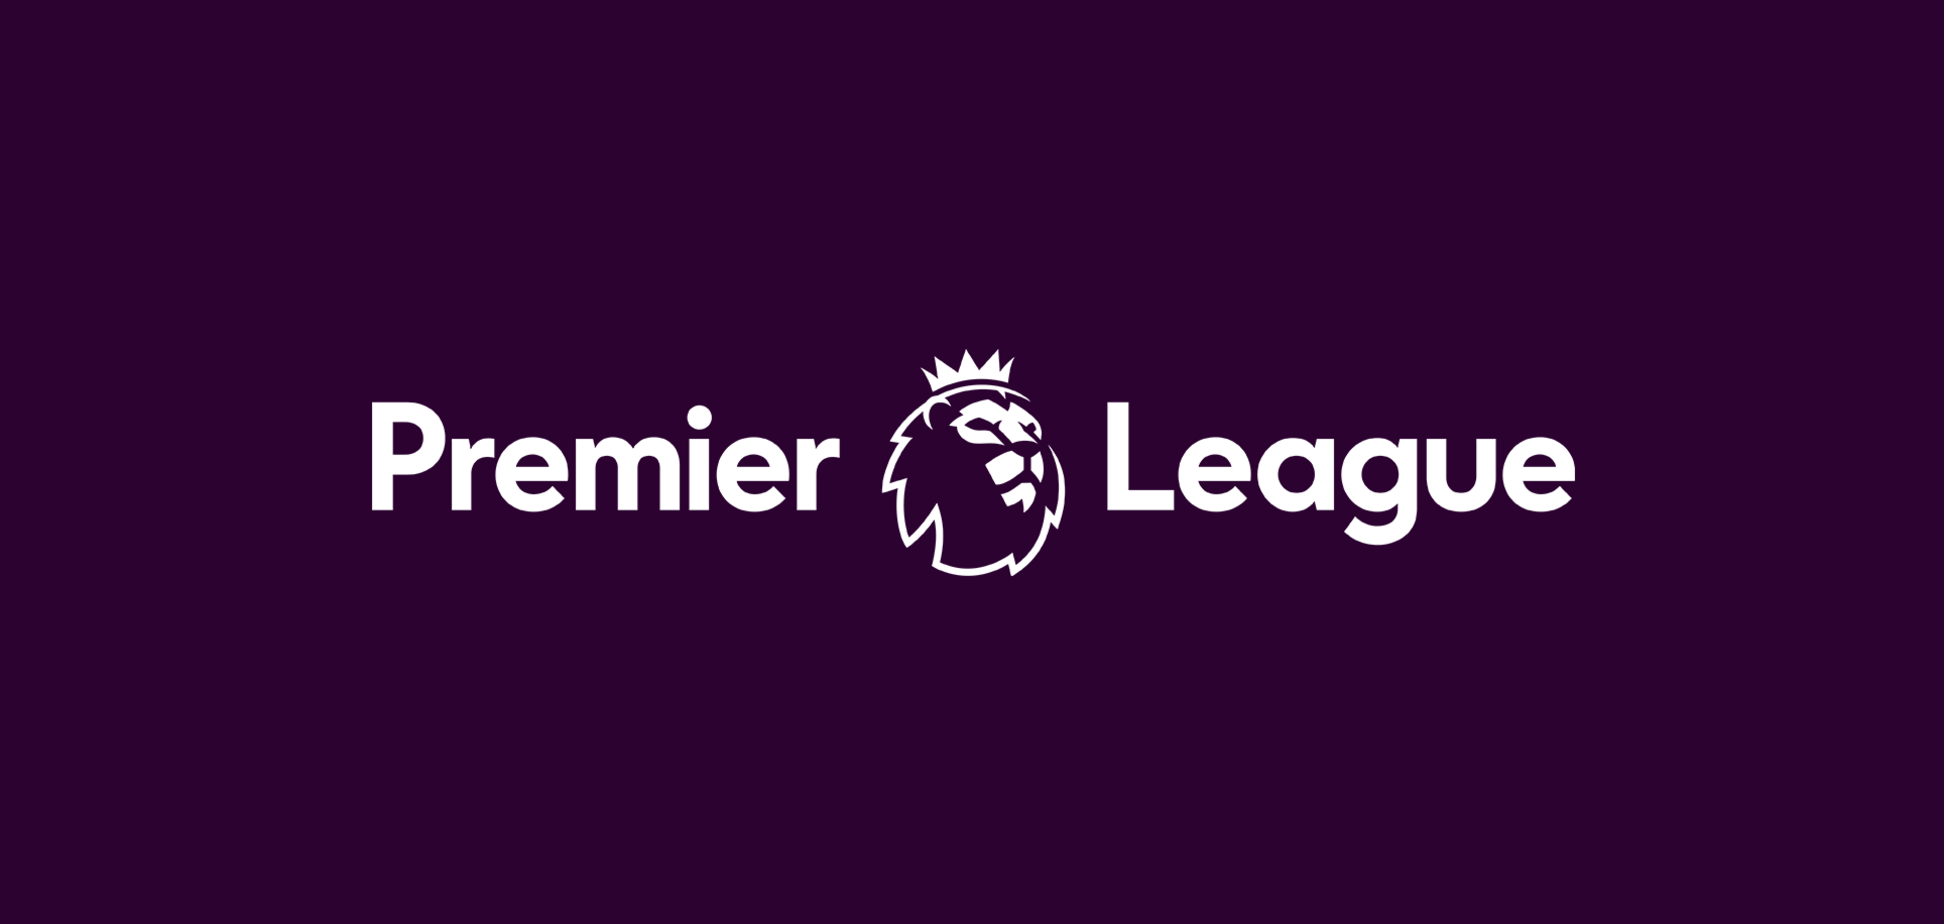 Логотип английской Премьер-лиги